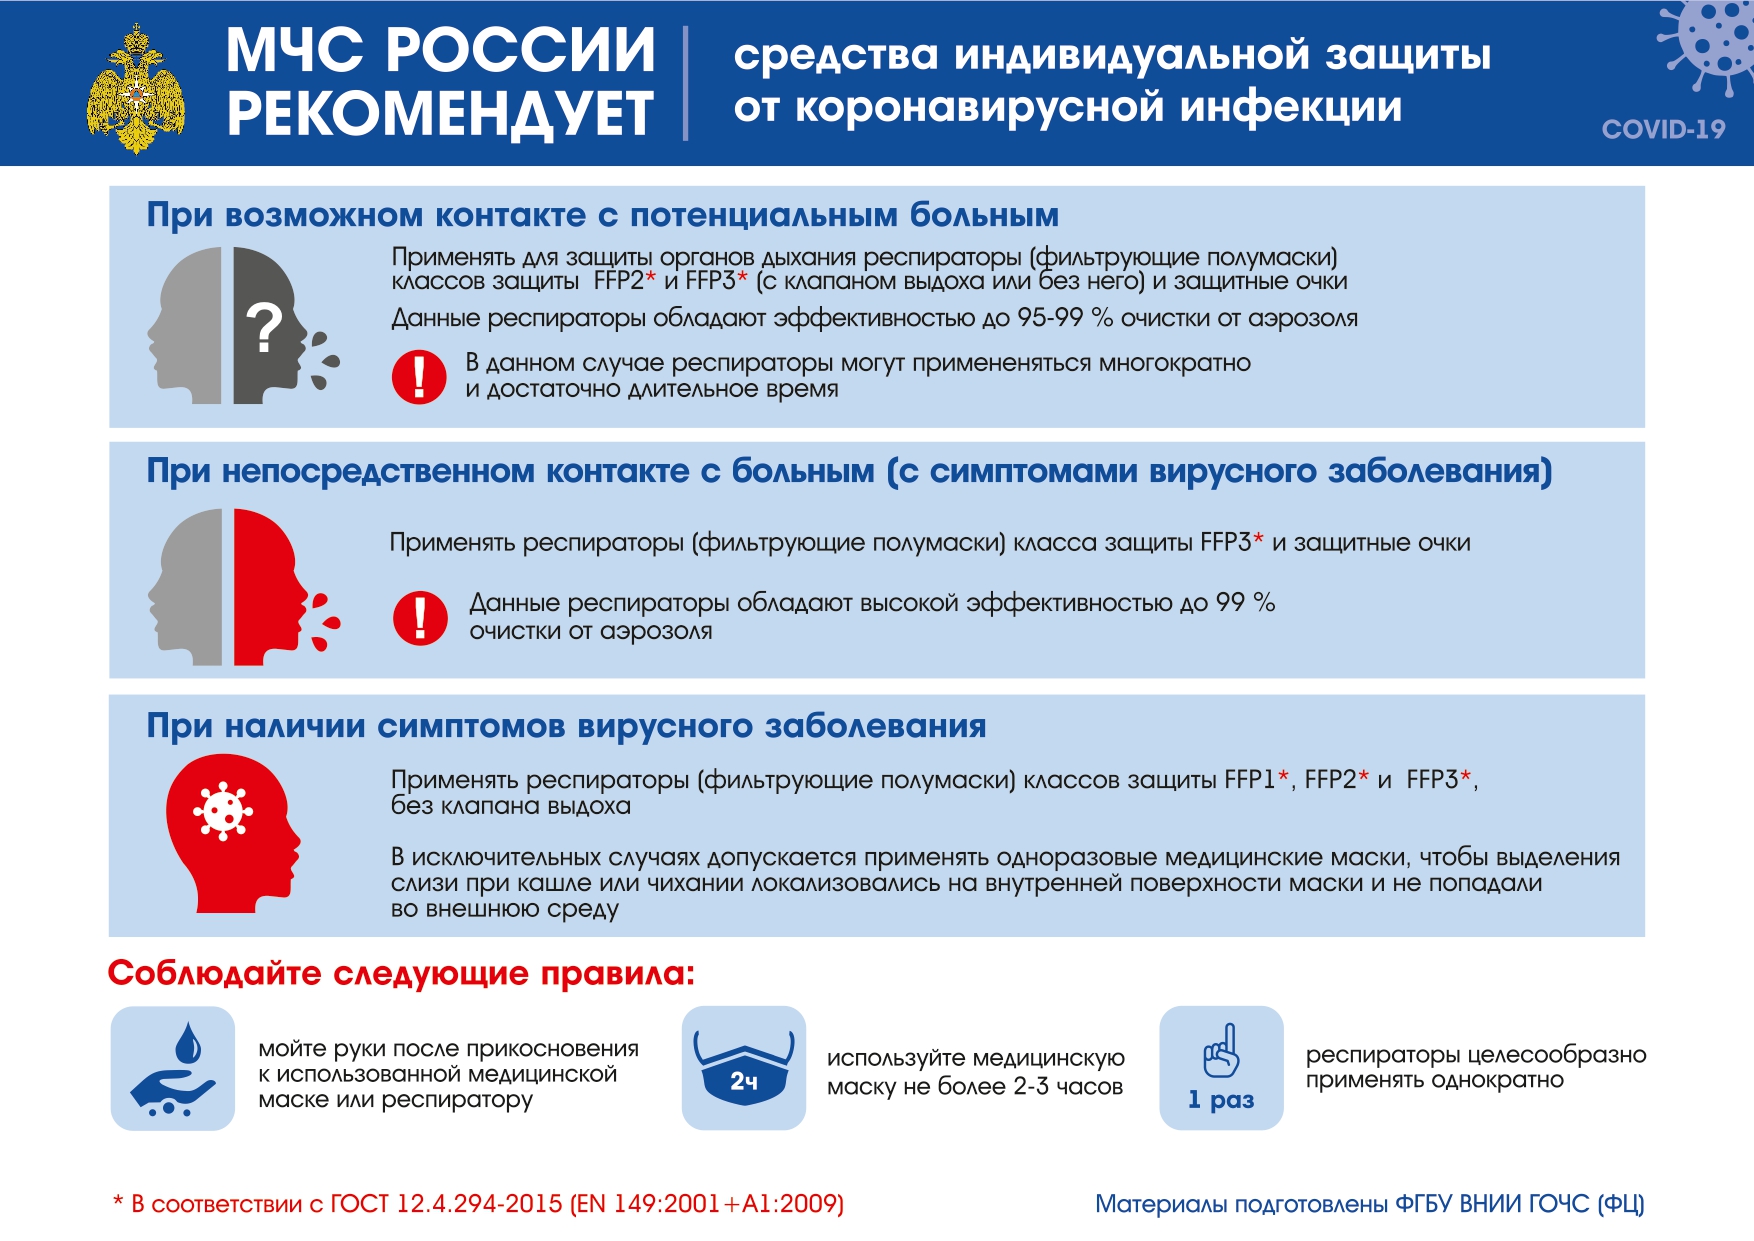 mchs_pamyatki.pdf.pdf.pdf_page0001